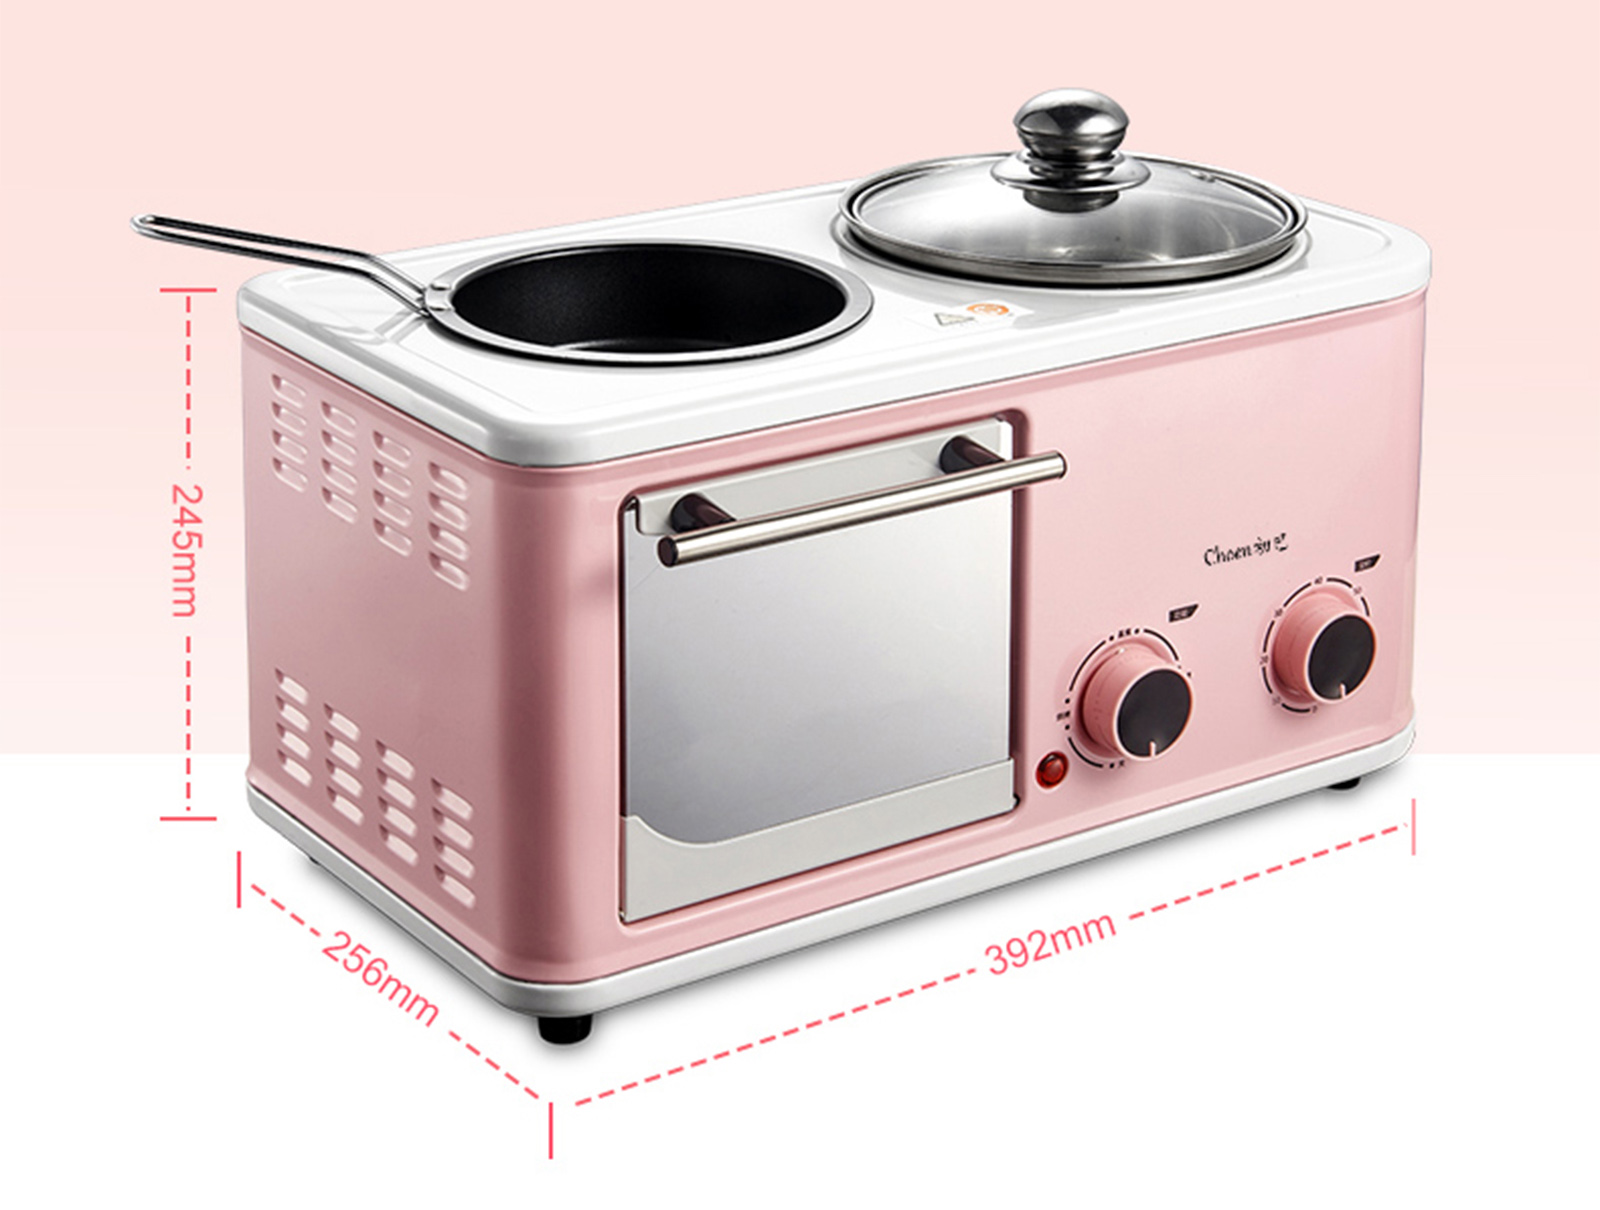 Hội chị em độc thân sẽ ngã gục và chăm chỉ nấu nướng mỗi ngày nhờ lò nướng mini đa năng hồng phấn siêu dễ thương với giá 137.000 đồng - Ảnh 7.